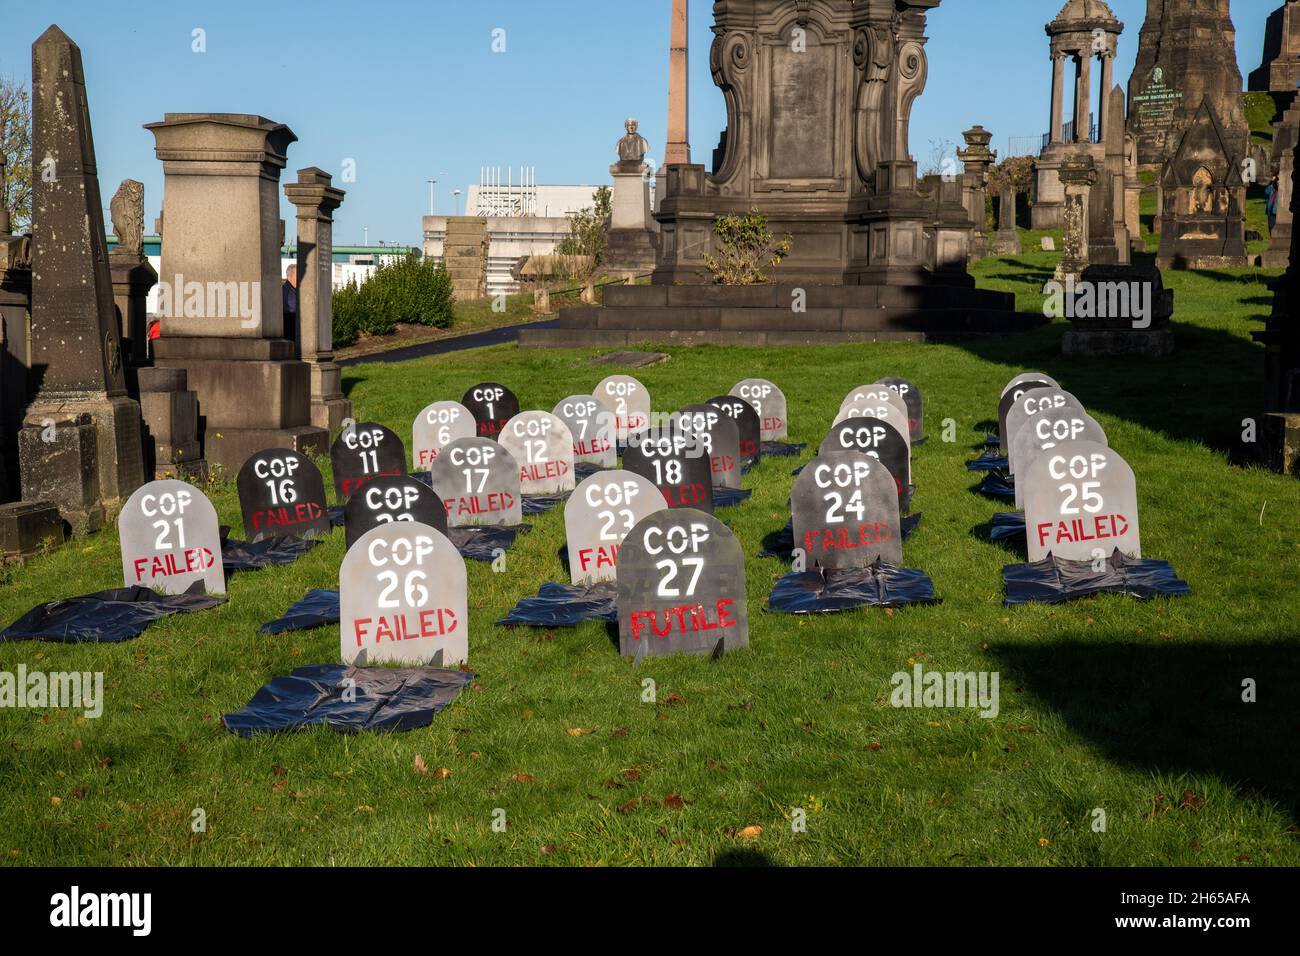 La Brigade de la Rebel Rouge rejoint la Brigade de la Rebel Bleue au cimetière de la nécropole de Glasgow pour le funéraire de COP26. Les militants écologistes, qui pleutisaient, estiment que COP26 est un échec et ont organisé des funérailles fictives pour le sommet. COP26 est mis au repos dans une tombe aux côtés de tous les précédents sommets de la CdP.COP27 est qualifié de futile. Banque D'Images